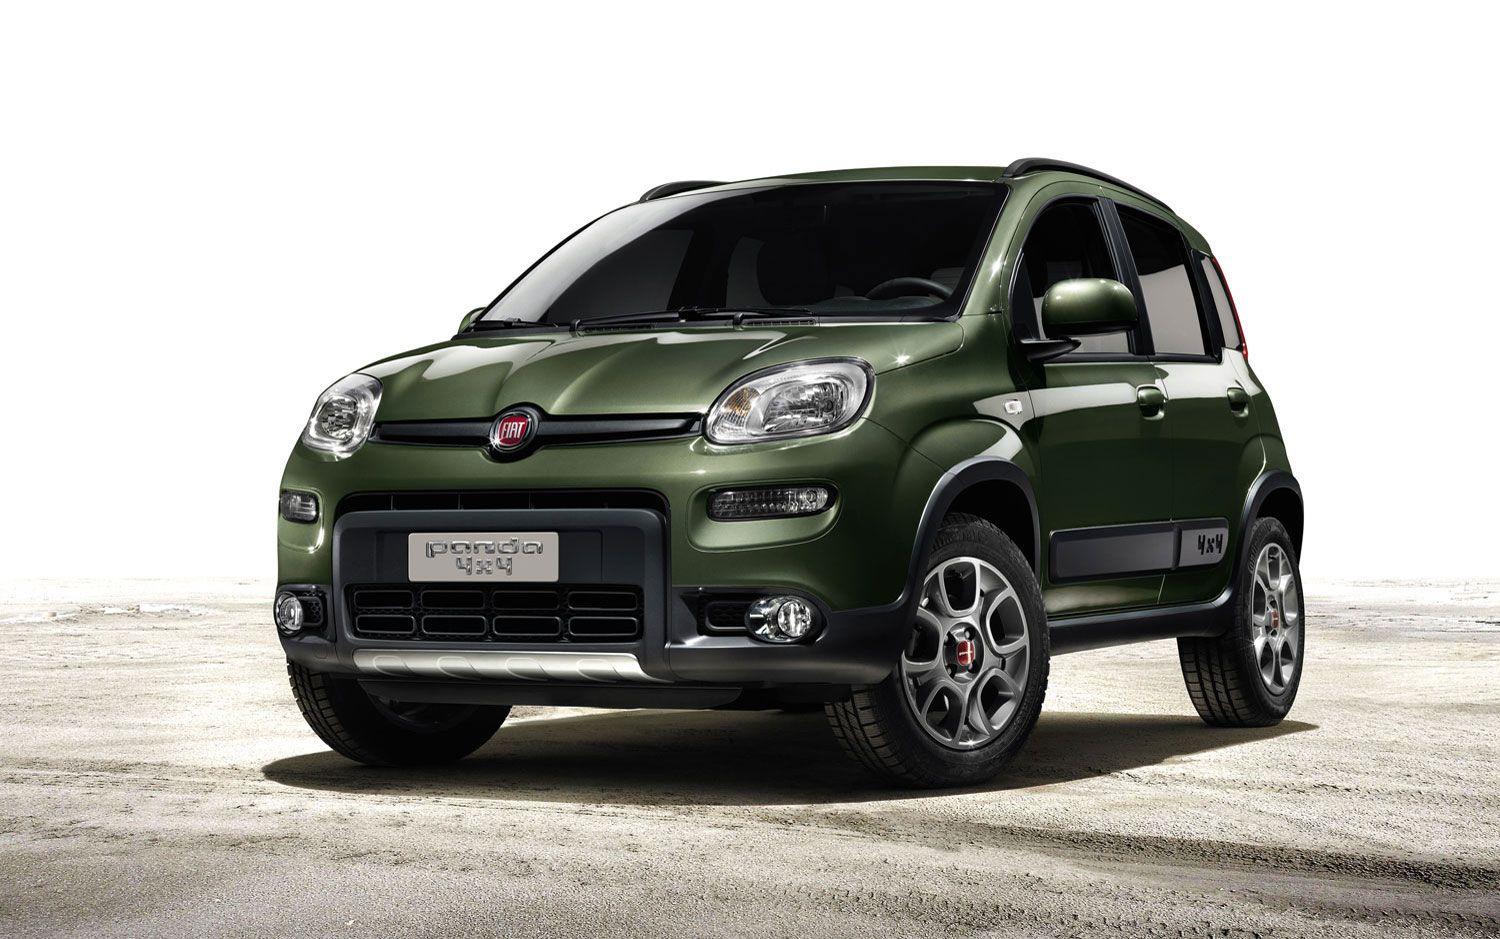 Cars Model 2013 2014: Fiat Panda 4x4